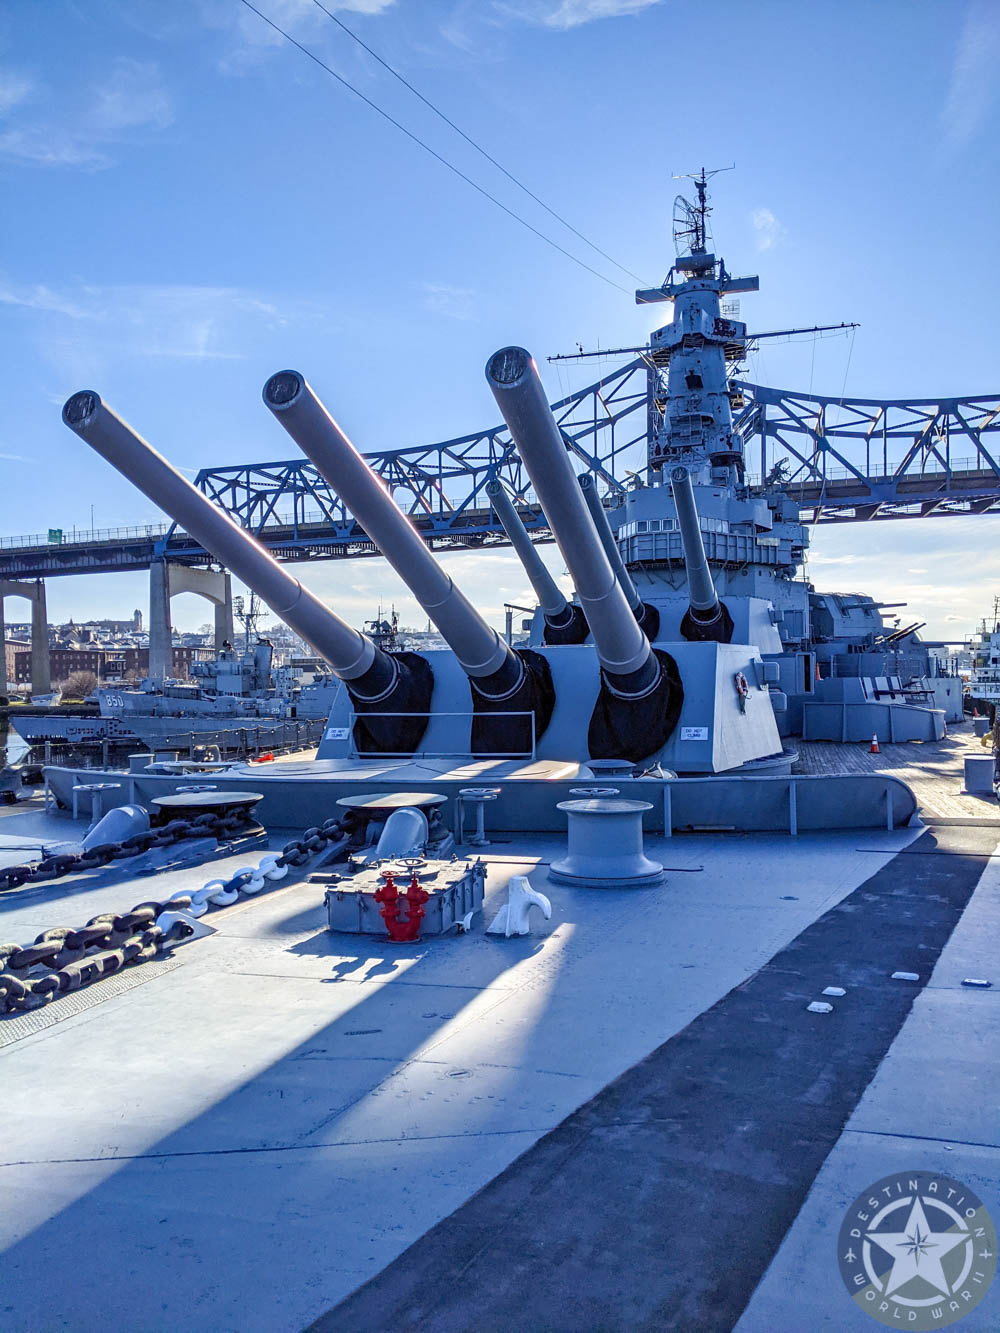 Big guns on the USS Massachusetts | 7 Reasons U.S. Battleship Museums are the Best Museums | USS Massachusetts, Battleship Cove, Fall River, Massachusetts